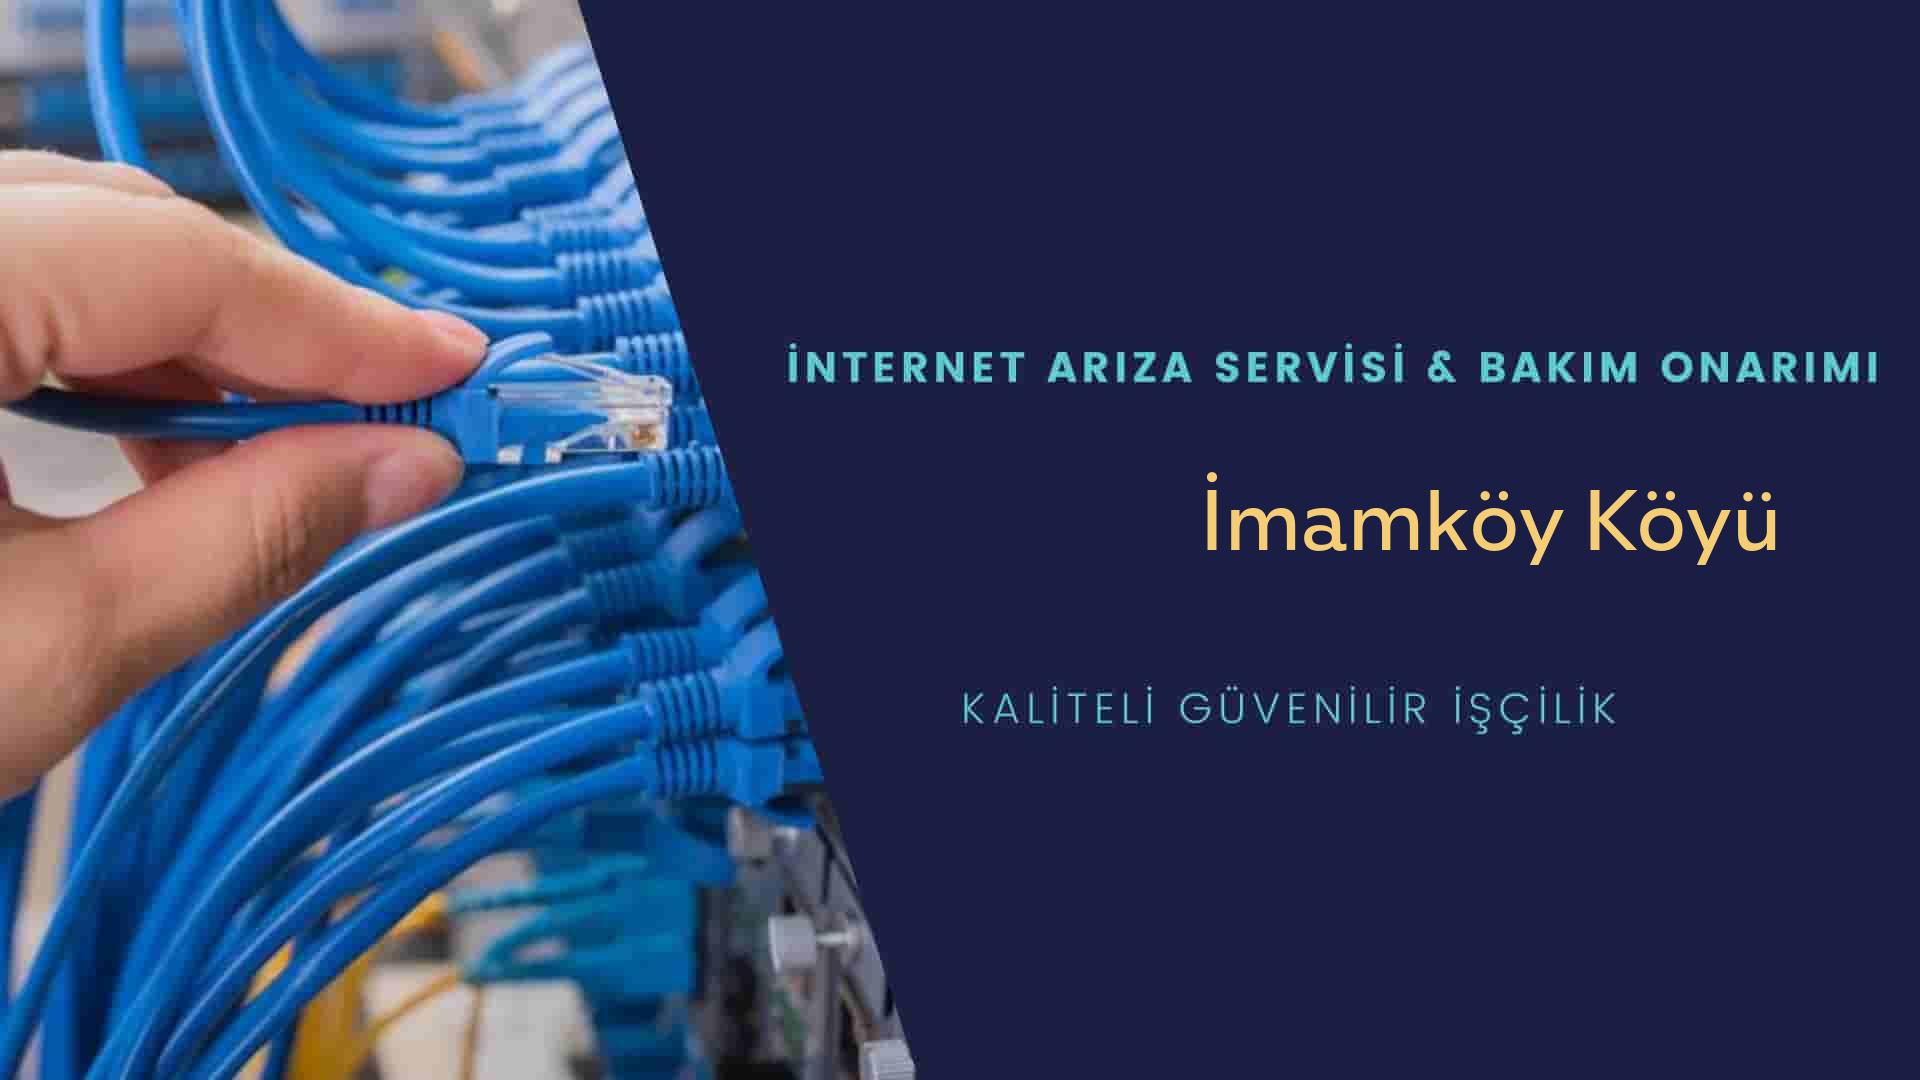 İmamköy Köyü internet kablosu çekimi yapan yerler veya elektrikçiler mi? arıyorsunuz doğru yerdesiniz o zaman sizlere 7/24 yardımcı olacak profesyonel ustalarımız bir telefon kadar yakındır size.